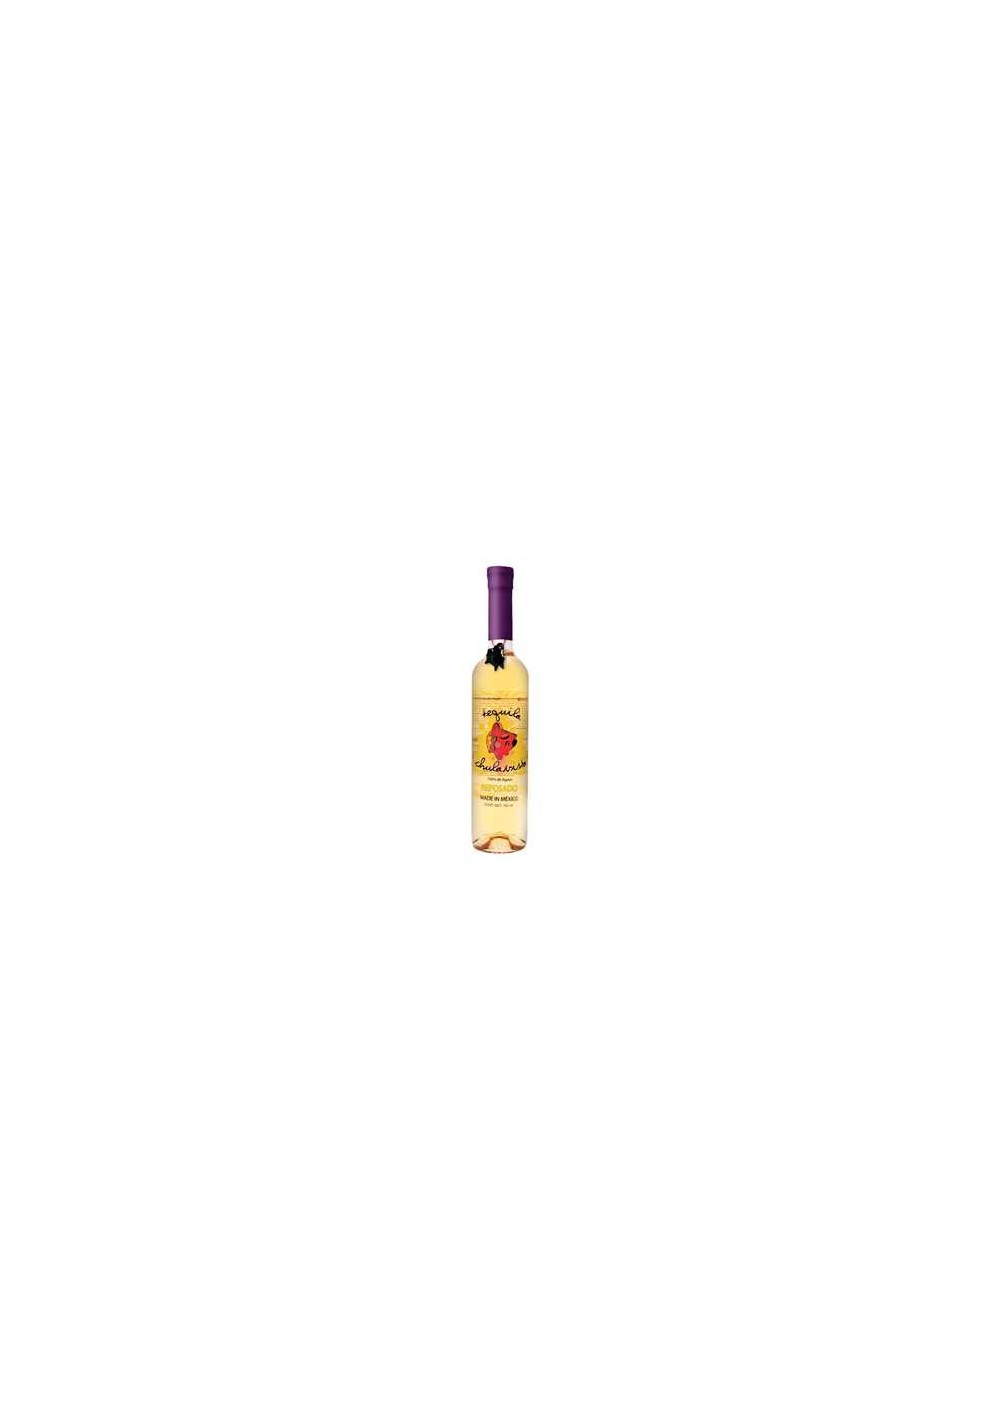 Chulavista - Tequila Reposado - (50cl)